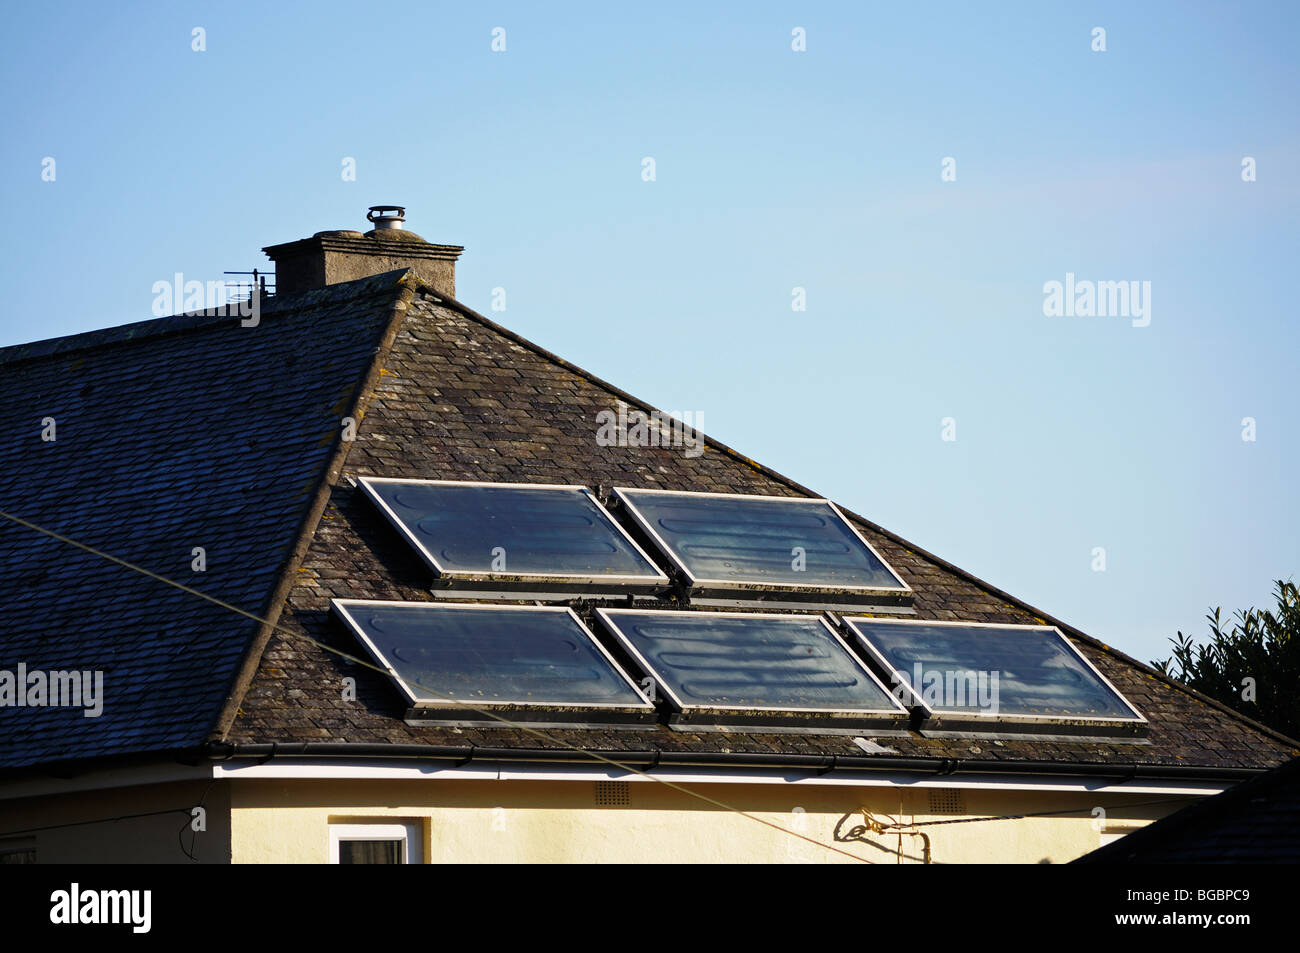 Panneaux solaires dans le toit d'une maison à Bristol, Angleterre, Royaume-Uni Banque D'Images